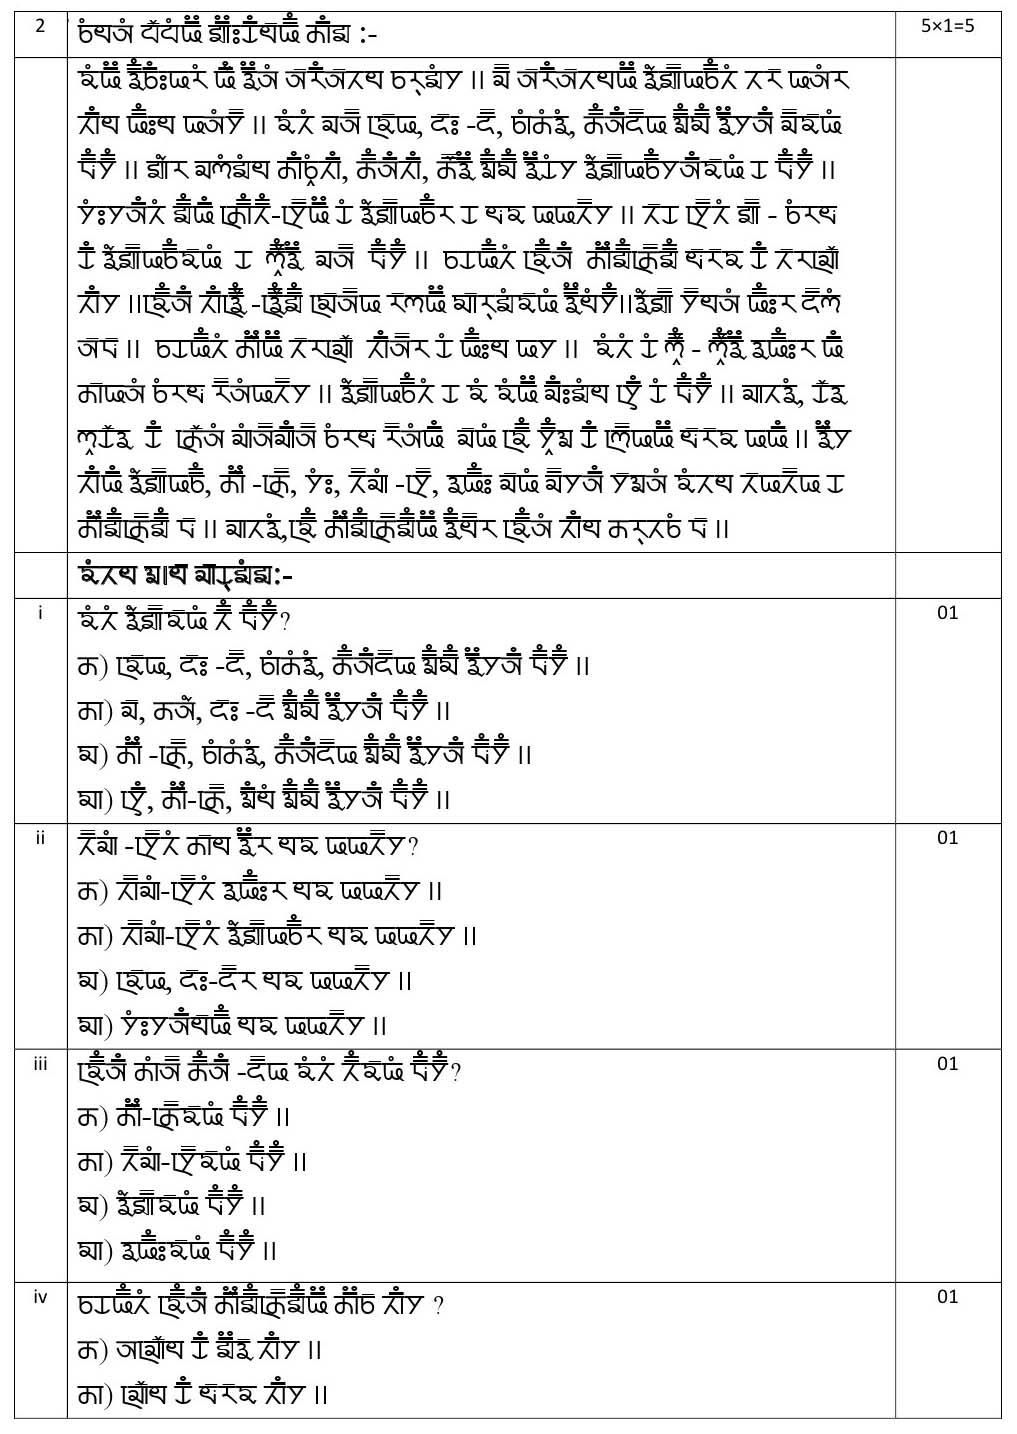 Gurung CBSE Class X Sample Question Paper 2020 21 - Image 4